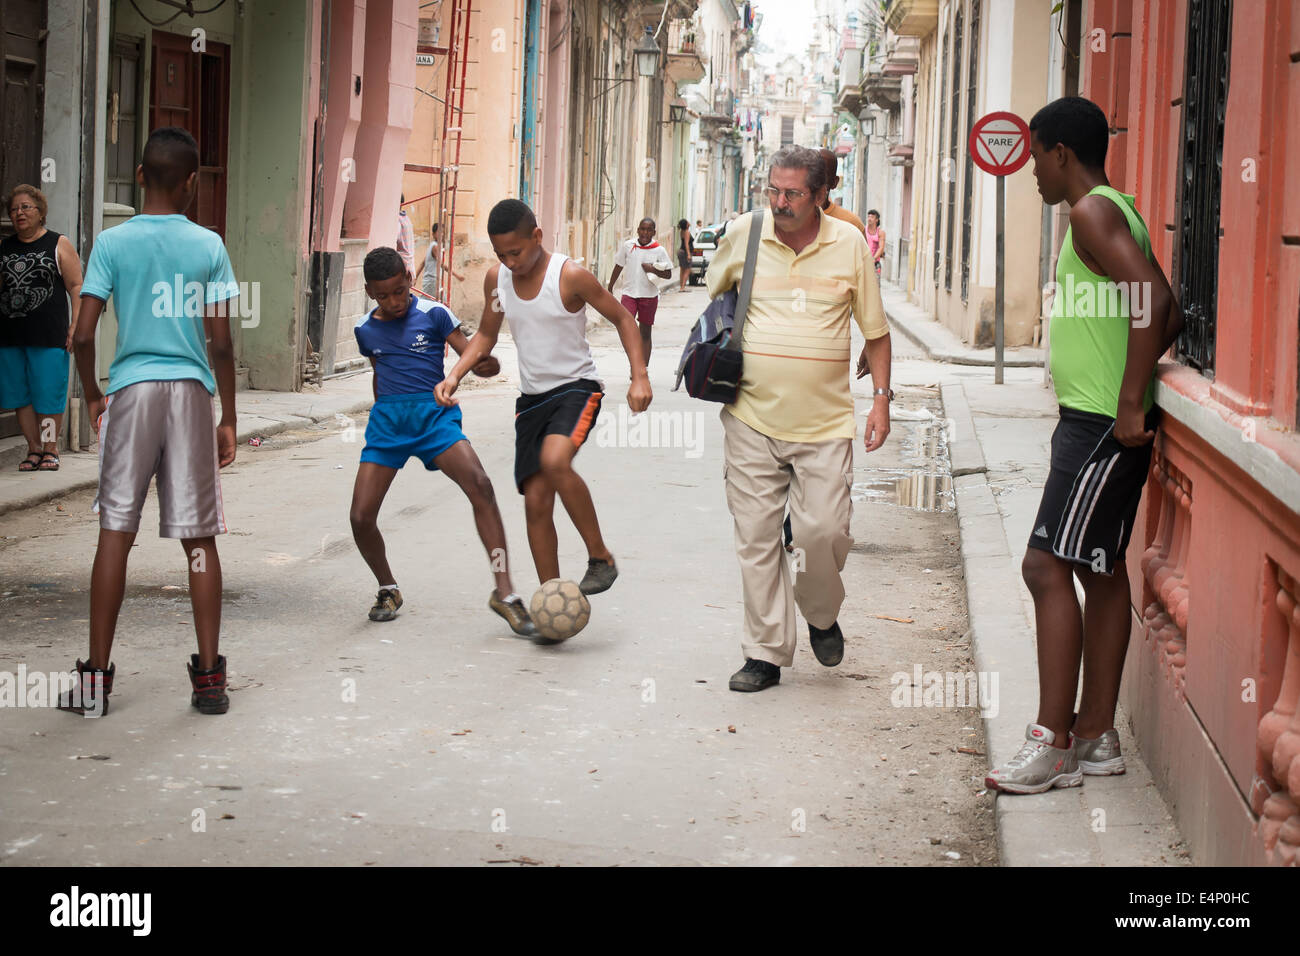 Jungs spielen mit Fußball in Straße, Havanna, Kuba Stockfoto